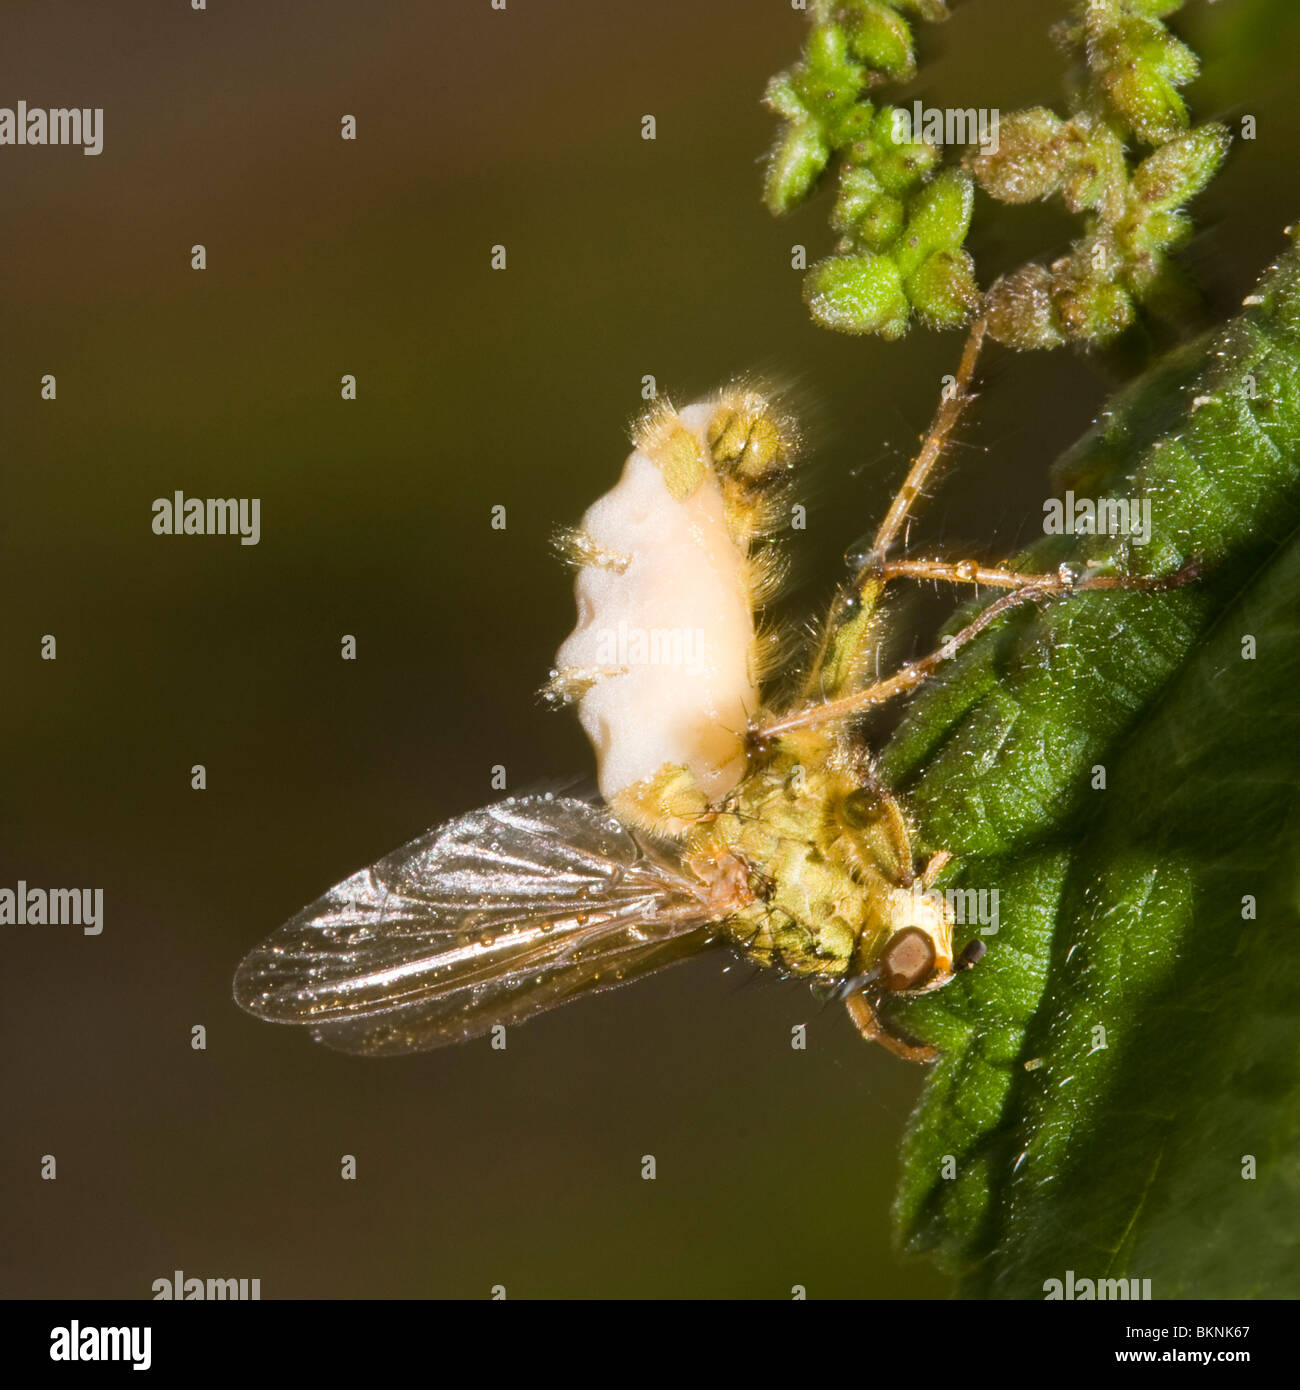 Een Gele Strontvlieg is ten prooi gevallen aan een schimmel van het geslacht Entomophaga. A Common Yellow Dung Fly (Scatophagus stercoraria) parasitised by a fungus from the genus Entomophaga. Stock Photo